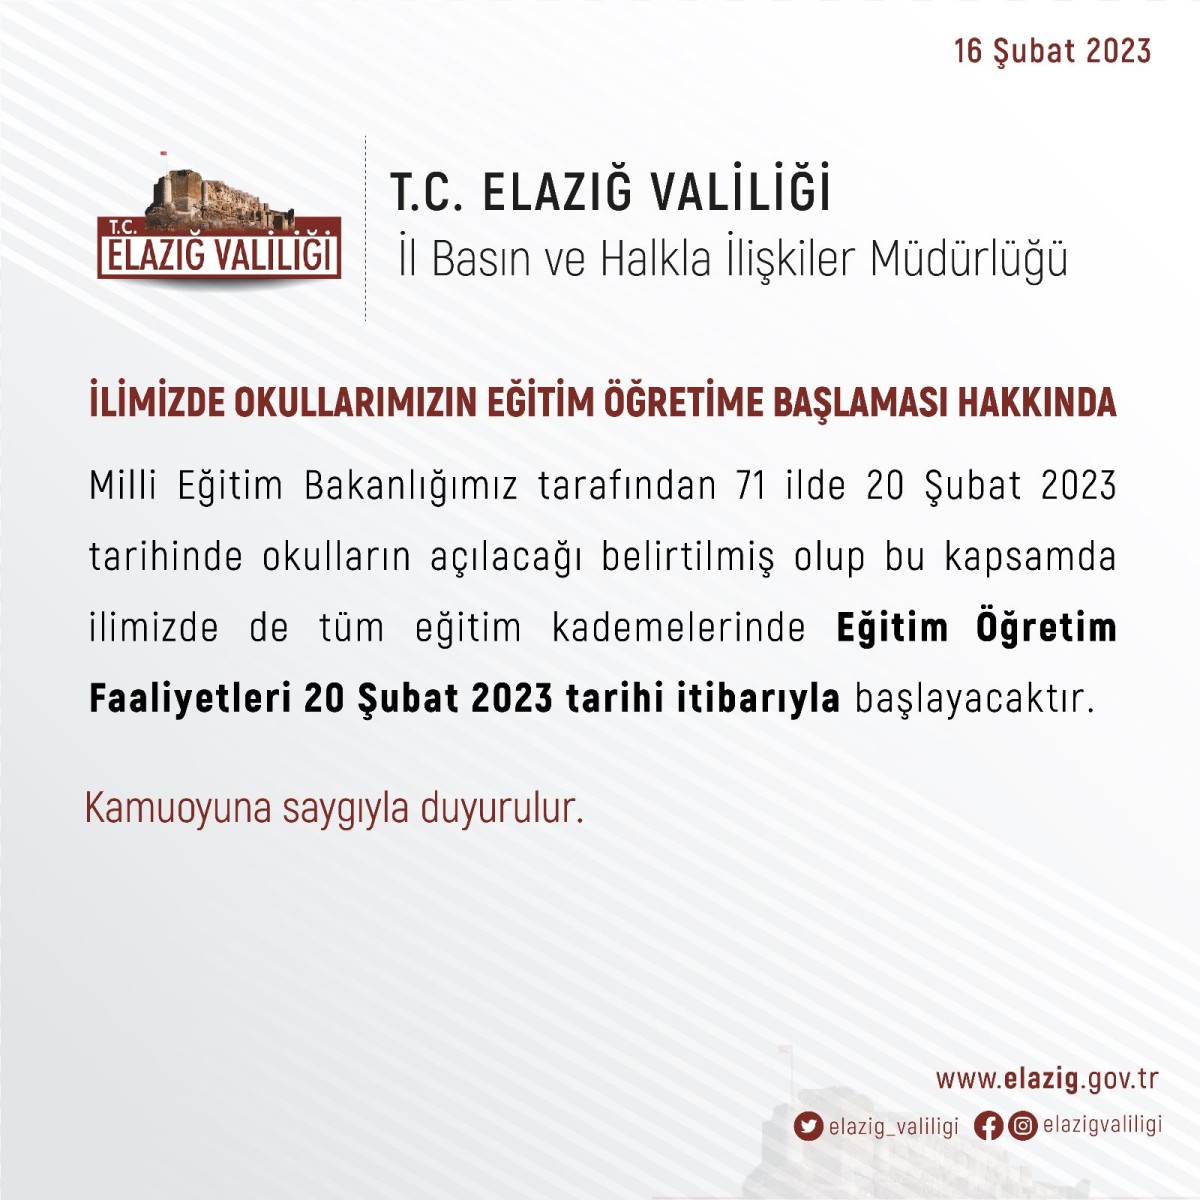 Elazığ'da Eğitim Öğretim 20 Şubat'ta Başlayacak